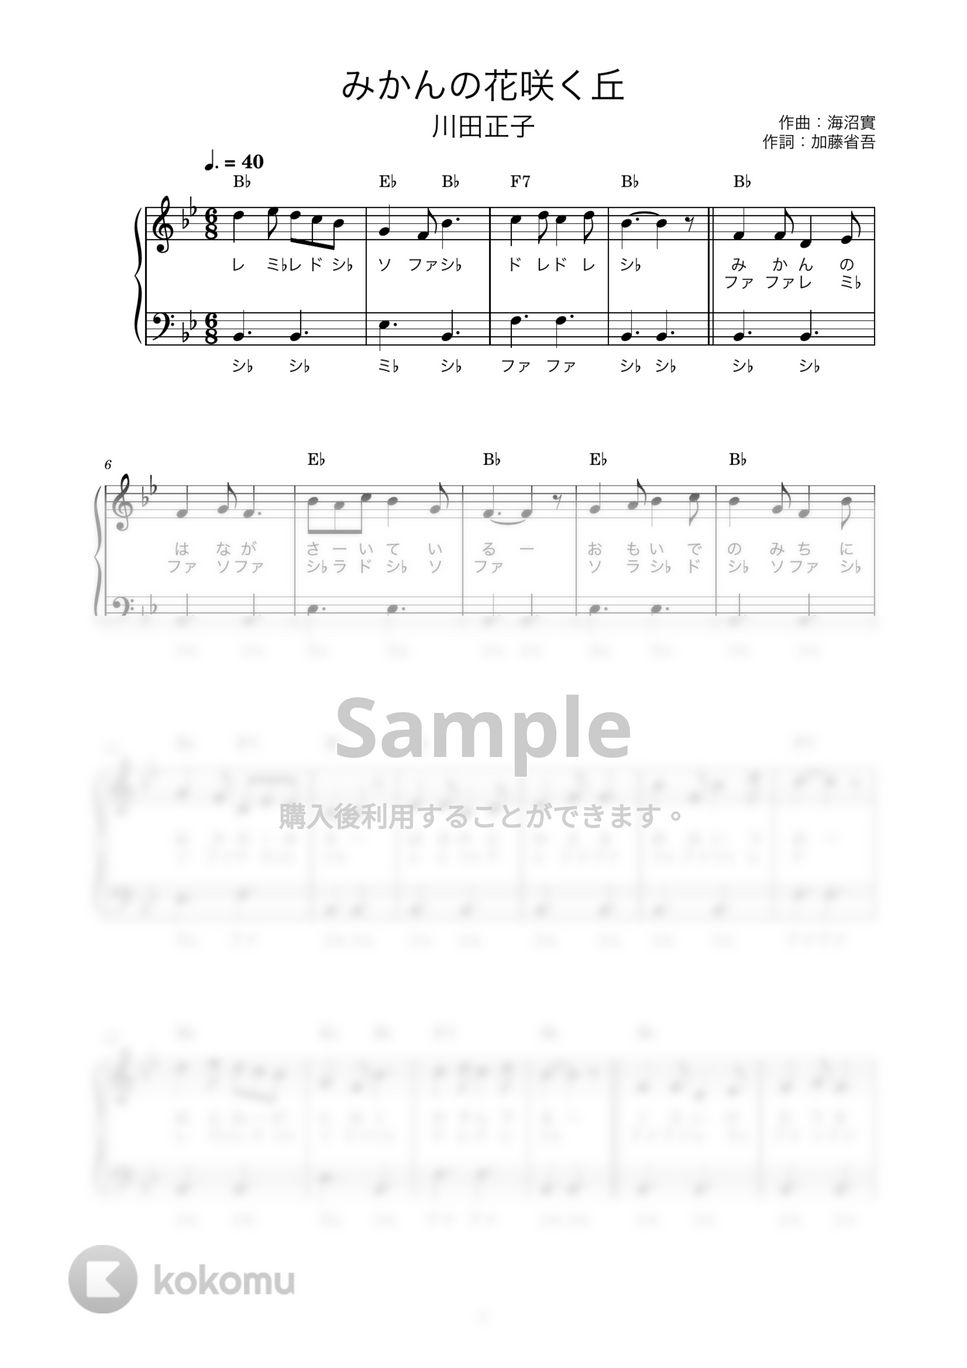 みかんの花咲く丘 (かんたん / 歌詞付き / ドレミ付き / 初心者) by piano.tokyo